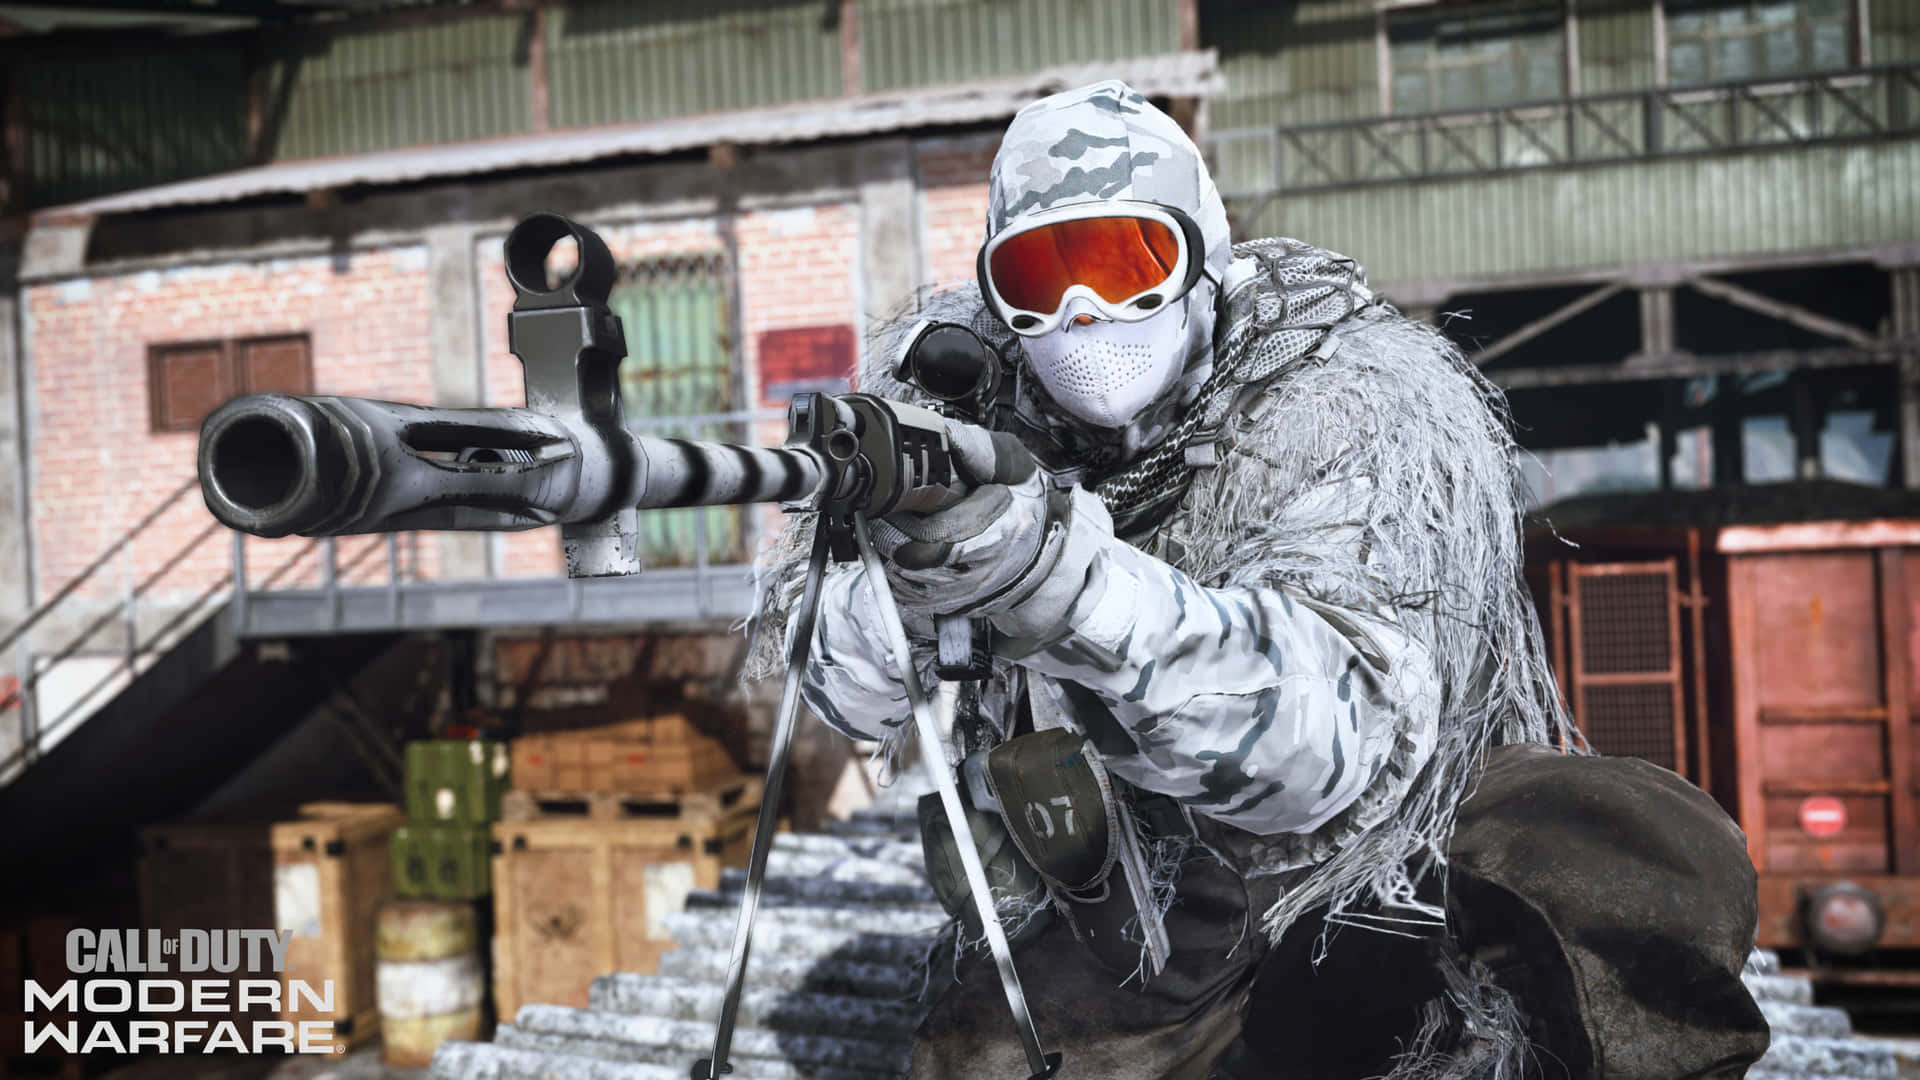 4kcall Of Duty Modern Warfare-bakgrundssoldat I Vit Kamouflage